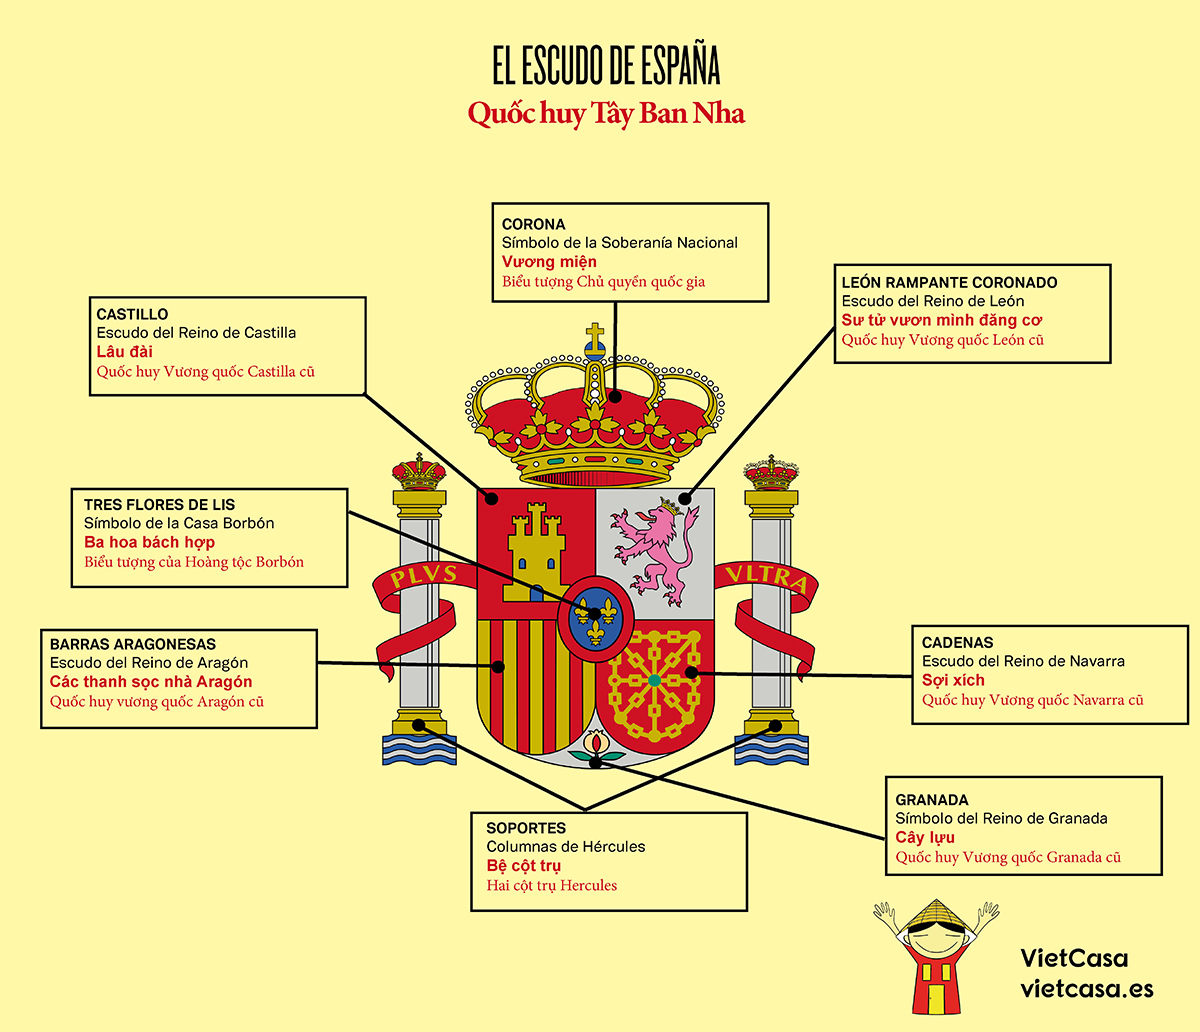 Quốc huy Tây Ban Nha là biểu tượng tuyệt vời của đất nước này. Với hình ảnh chim ác quỷ và cây nguyệt quế, ý nghĩa của quốc huy Tây Ban Nha mang đến sự cam kết tôn trọng và trung thành với lịch sử và tôn giáo. Hãy cùng xem hình ảnh về quốc huy Tây Ban Nha để cảm nhận sự truyền thống và tự hào của đất nước này.